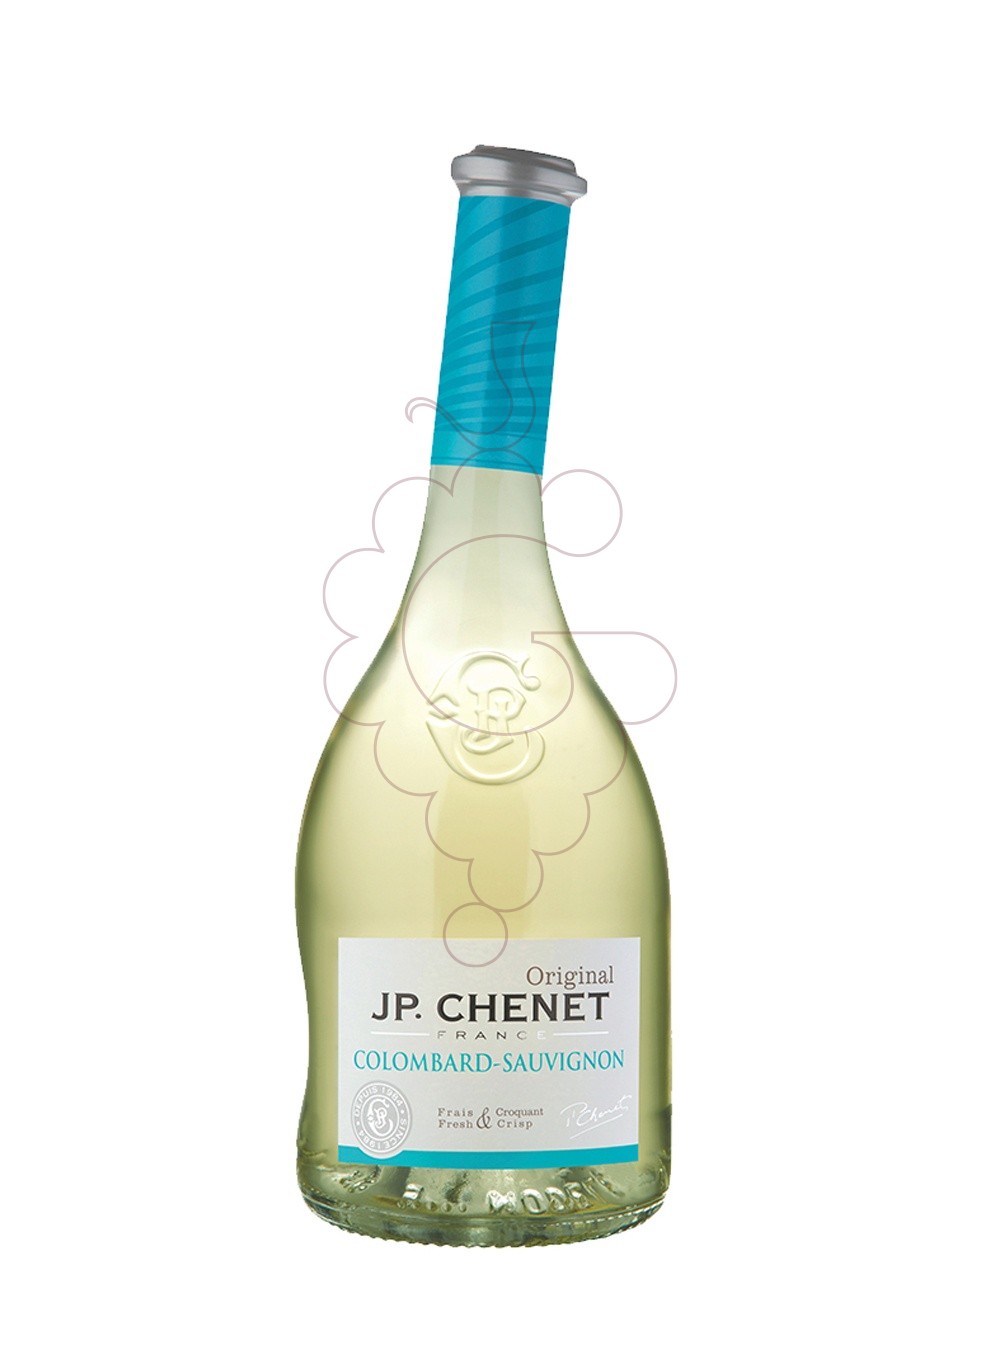 Foto JP Chenet Original Colombard-Sauvignon Blanc vi blanc